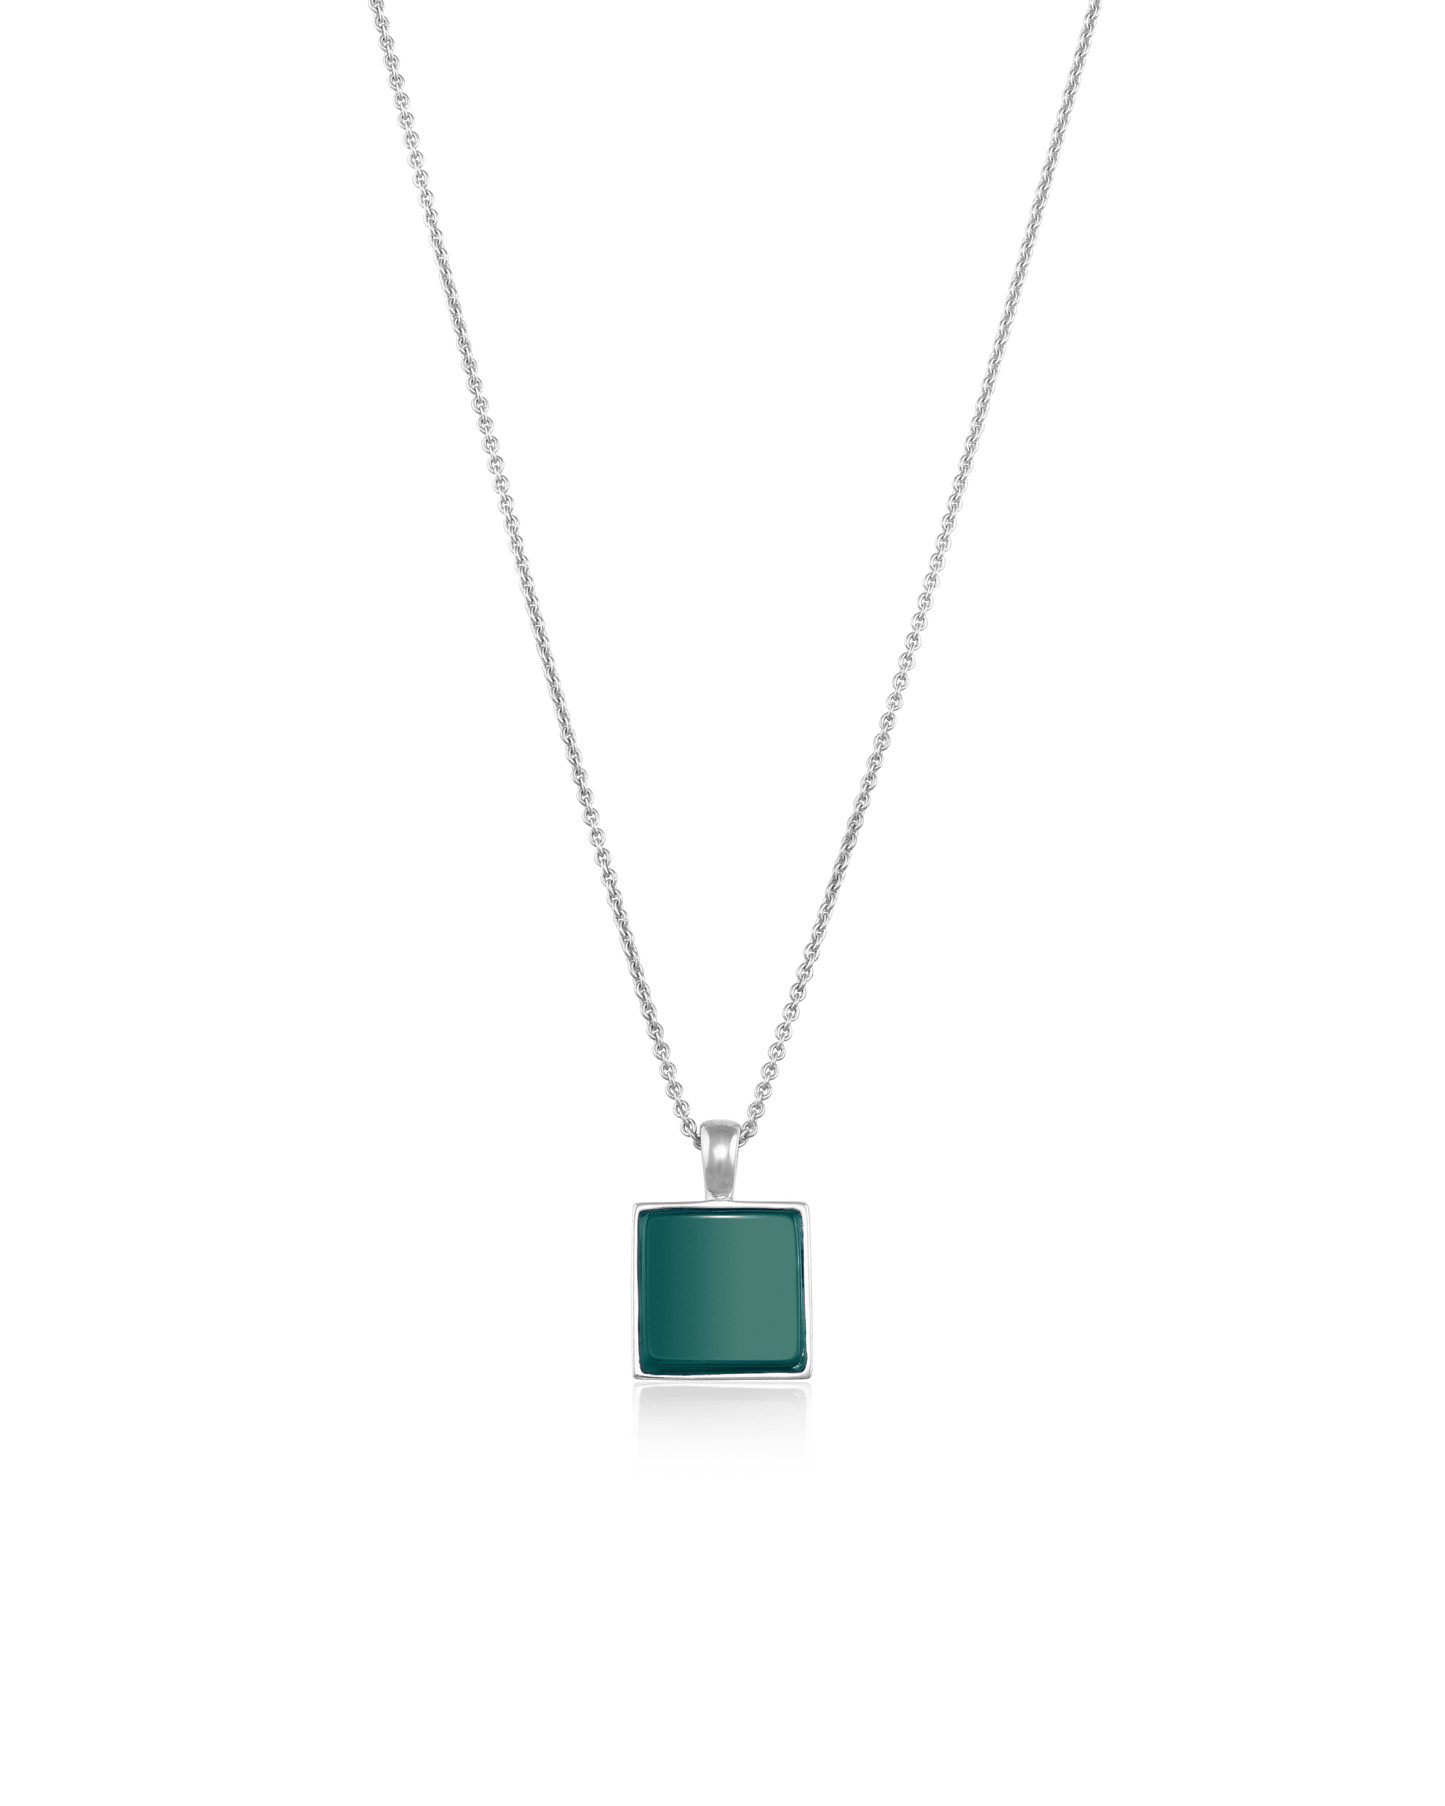 El Dorado Necklace - 925 Sterling Silver Necklaces magal-dev Green Agate 22" 